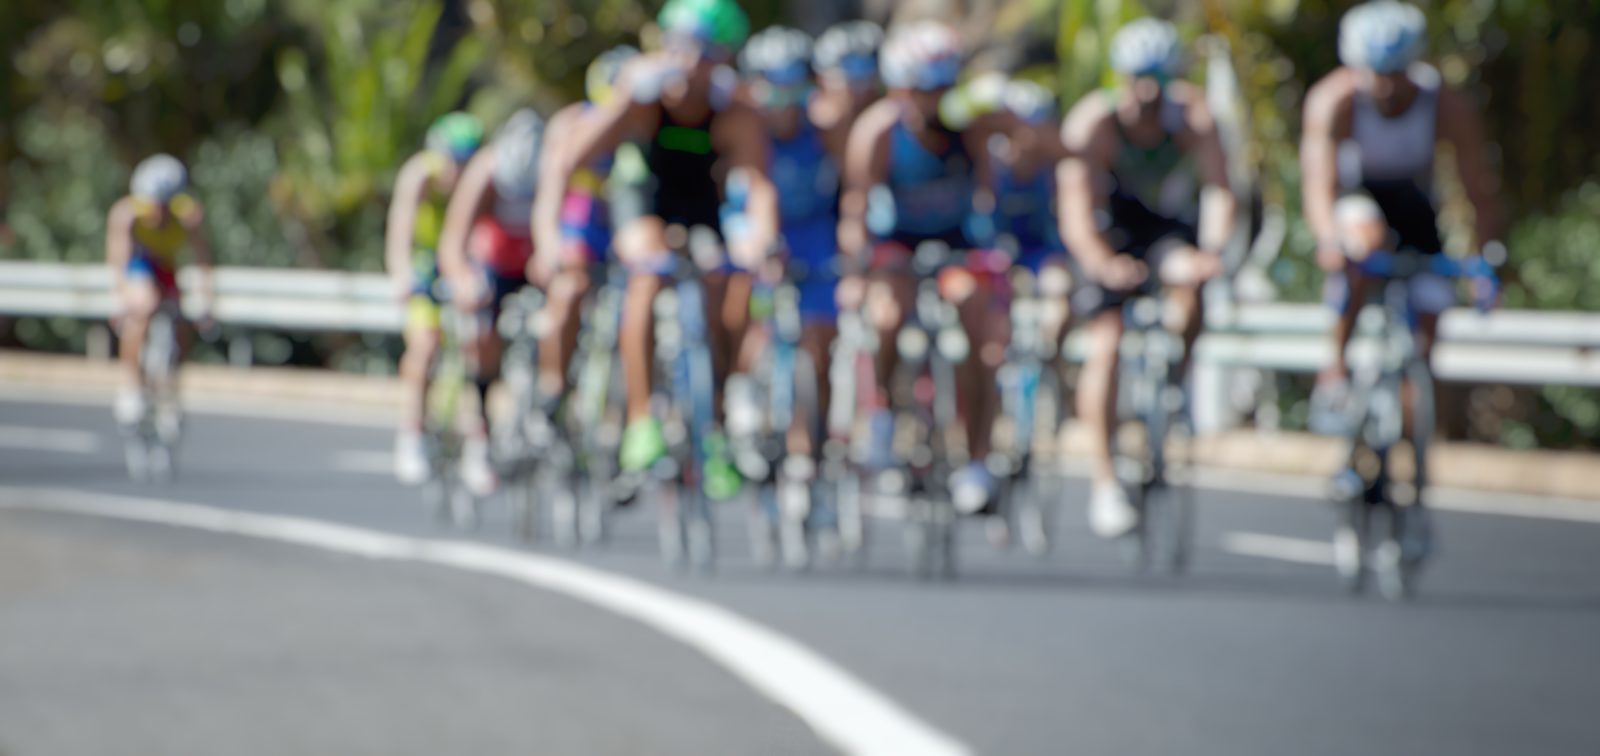 La course de cyclisme « Vuelta » arrive aux Pays-Bas en 2020 !